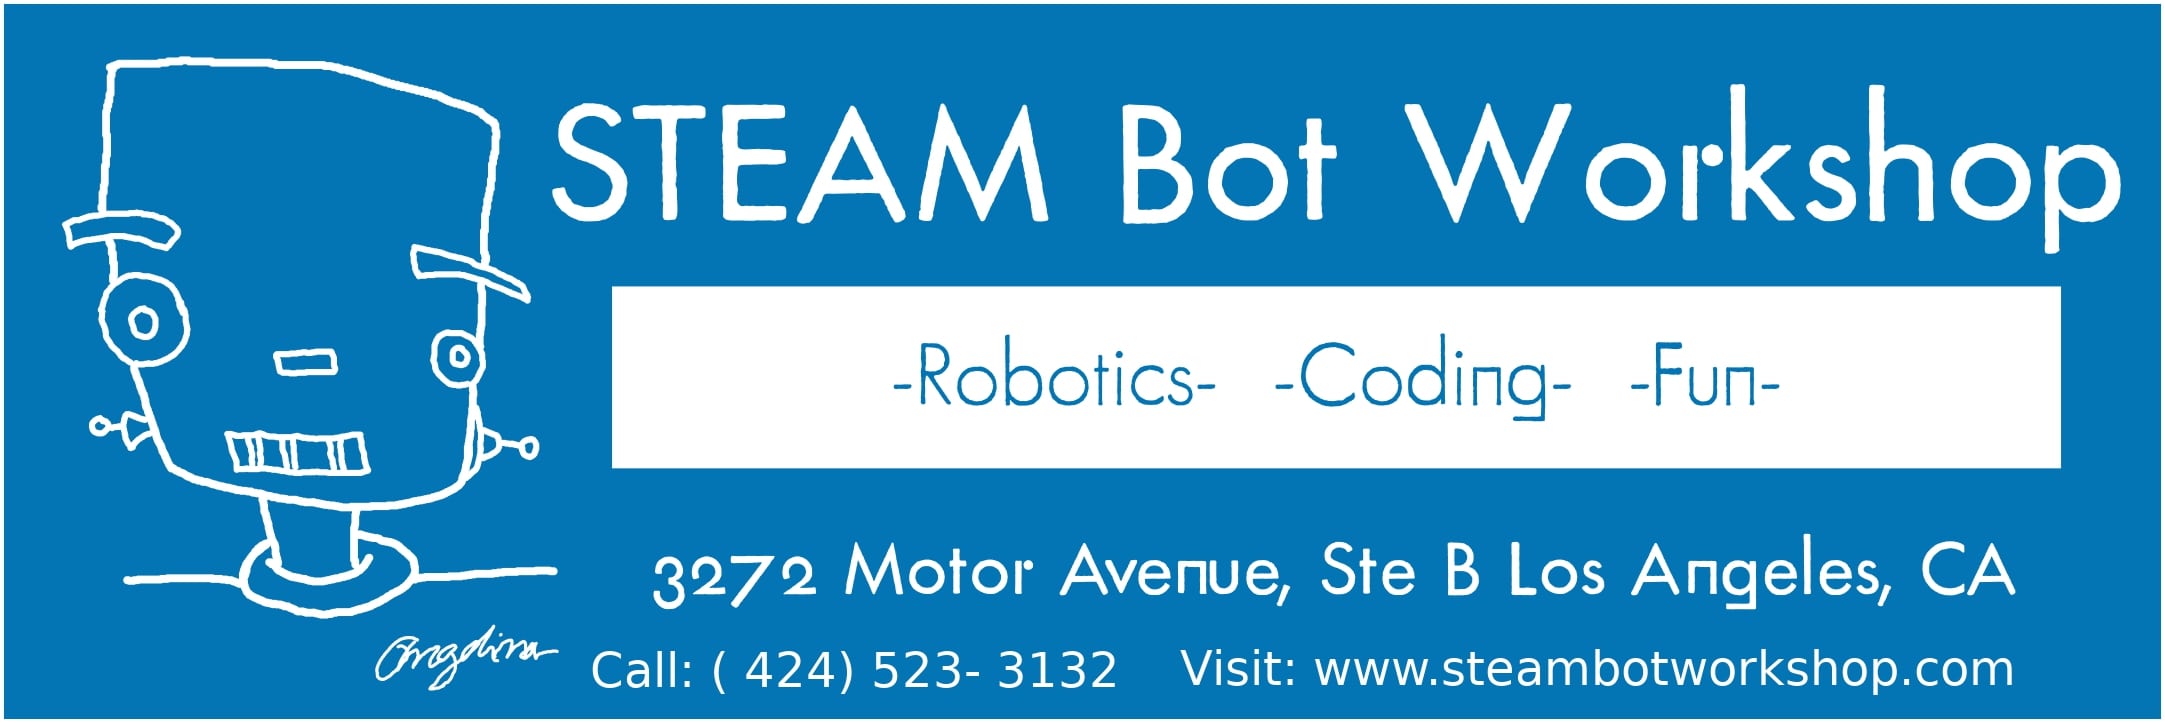 STEAM Bot Workshop